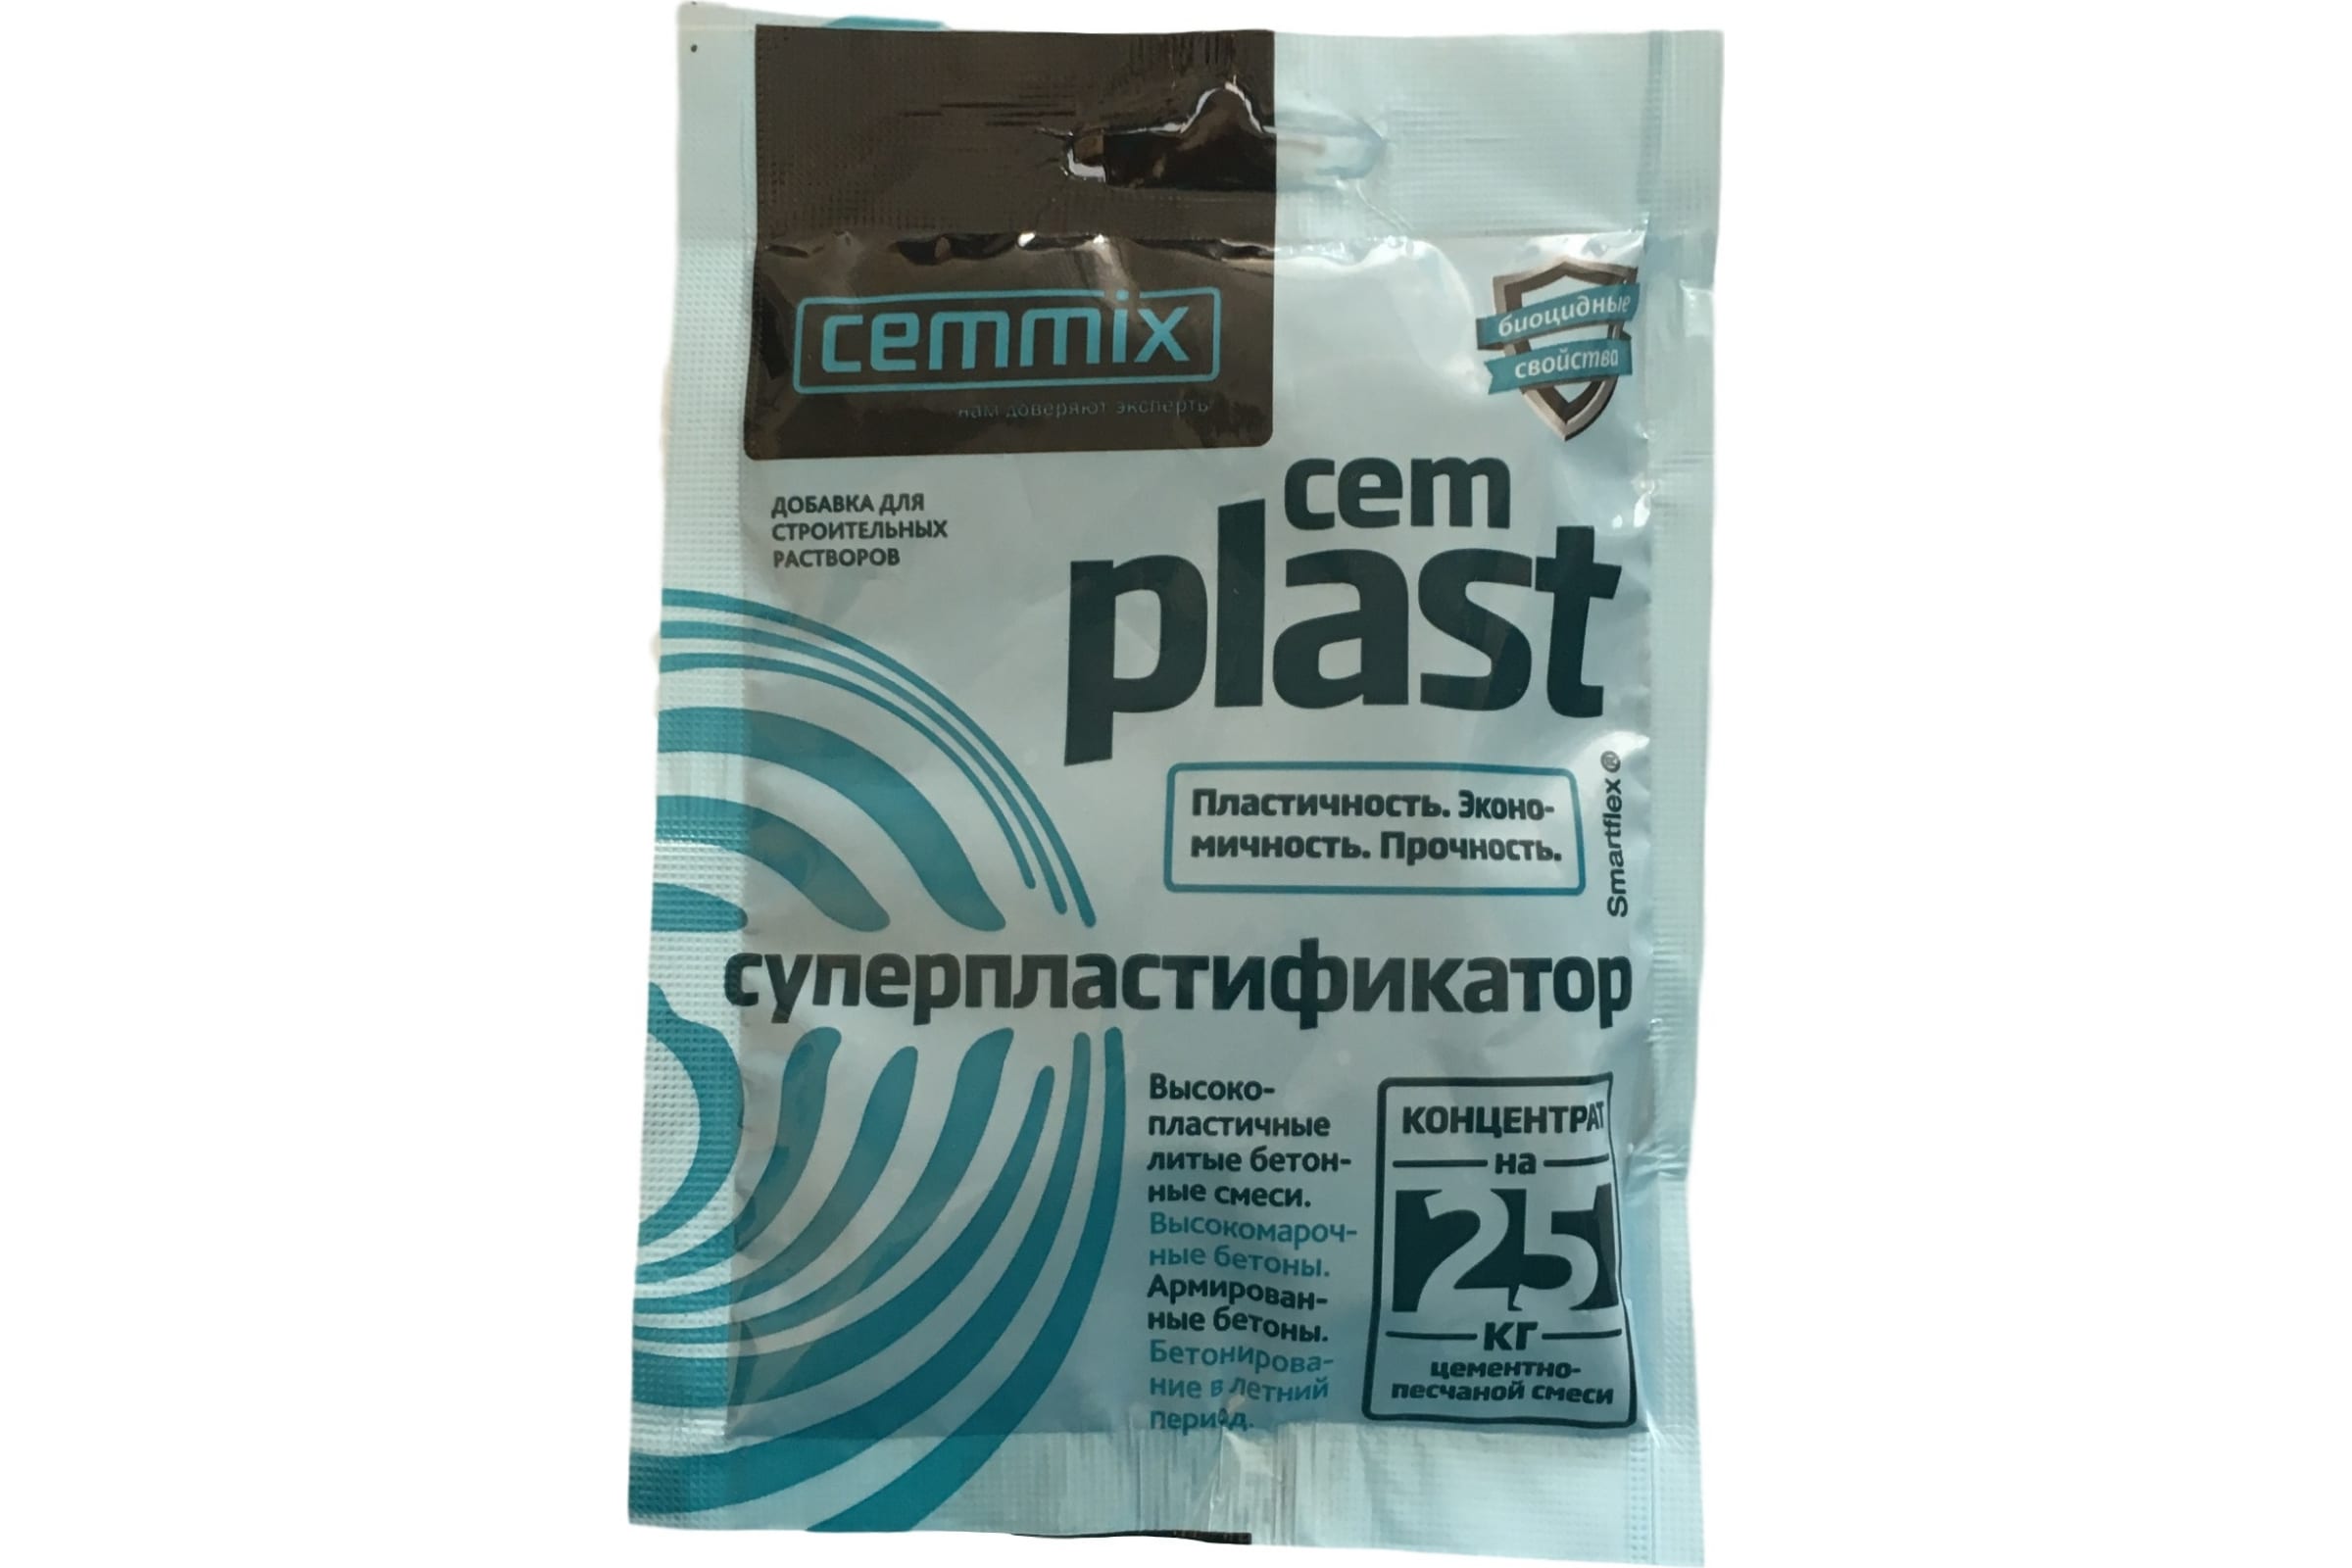 CEMMIX Суперпластификатор CemPlast, конц.саше 538664